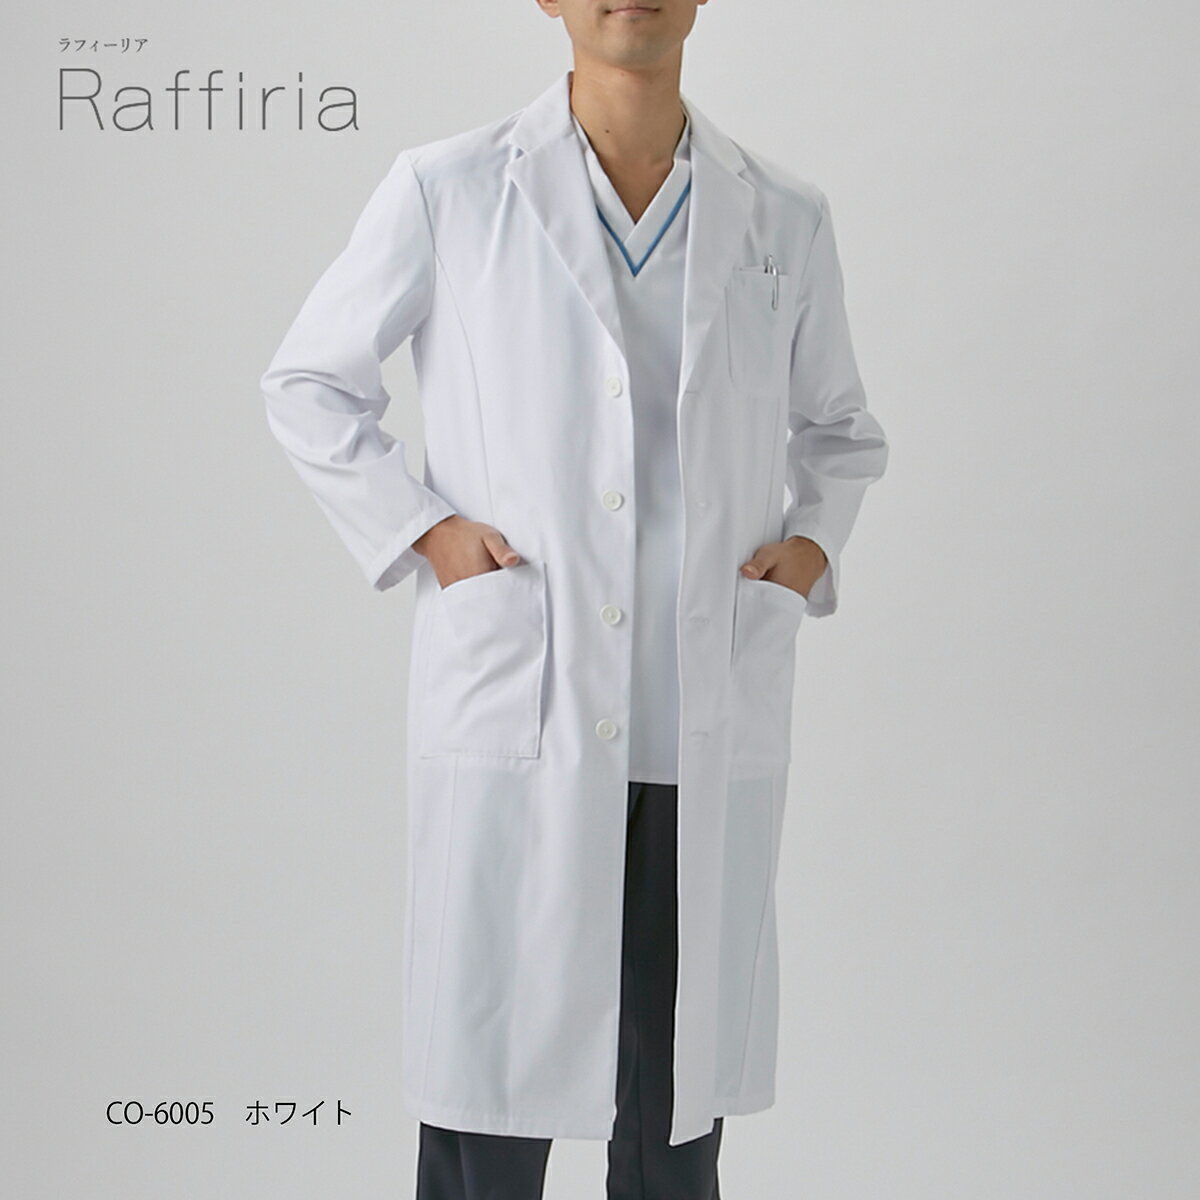 白衣 男性 ドクターコート ホワイト オンワード CO-6005 メンズ シングル 診察衣 白 速乾 形態安定 二重ポケット